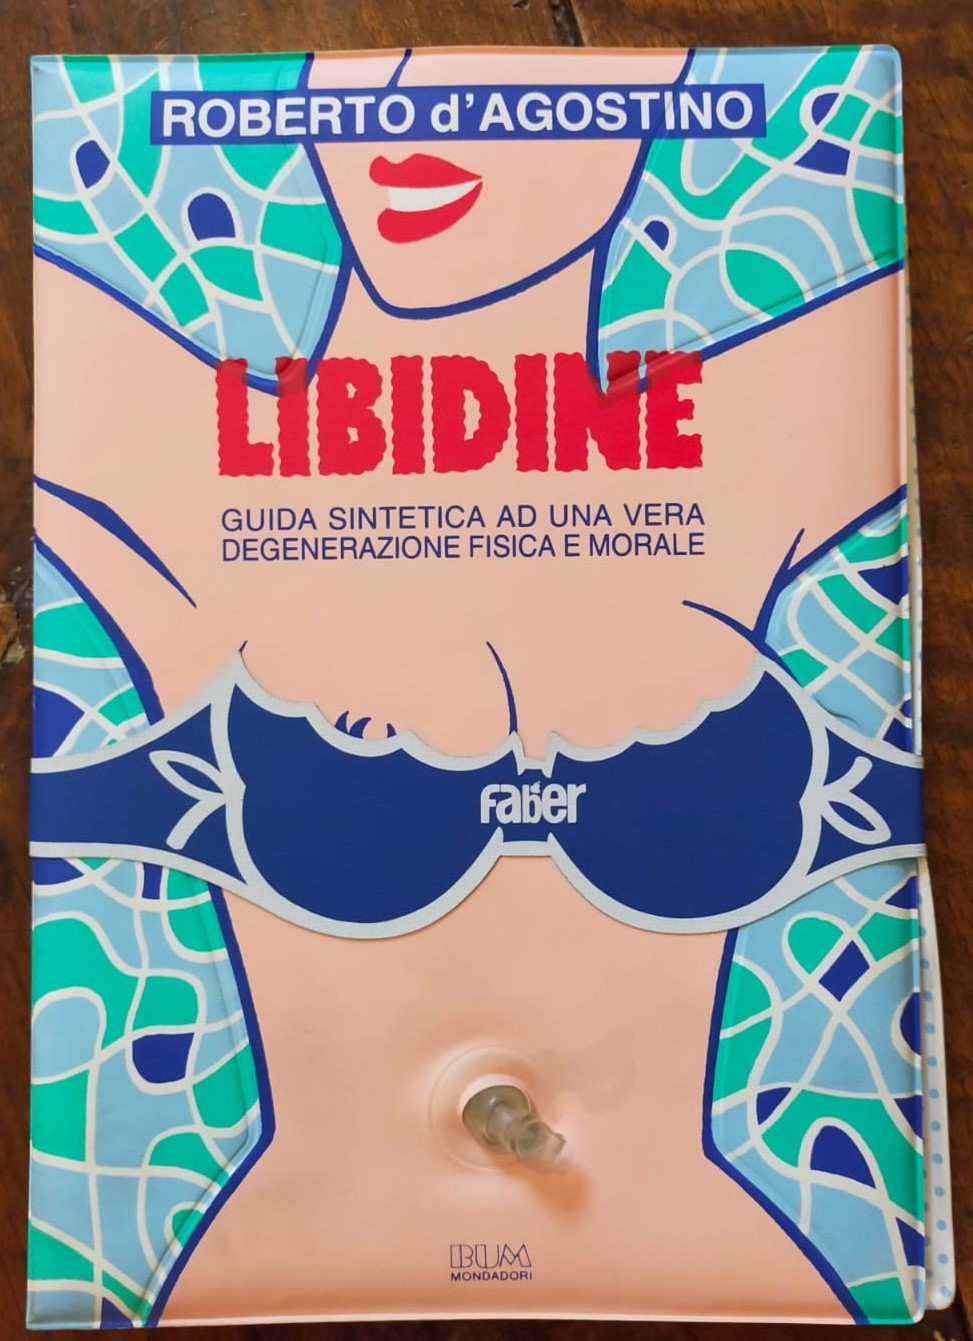 Il primo libro gonfiabile (tutto in plastica) è di Roberto D’Agostino, con “Libidine” (1987)